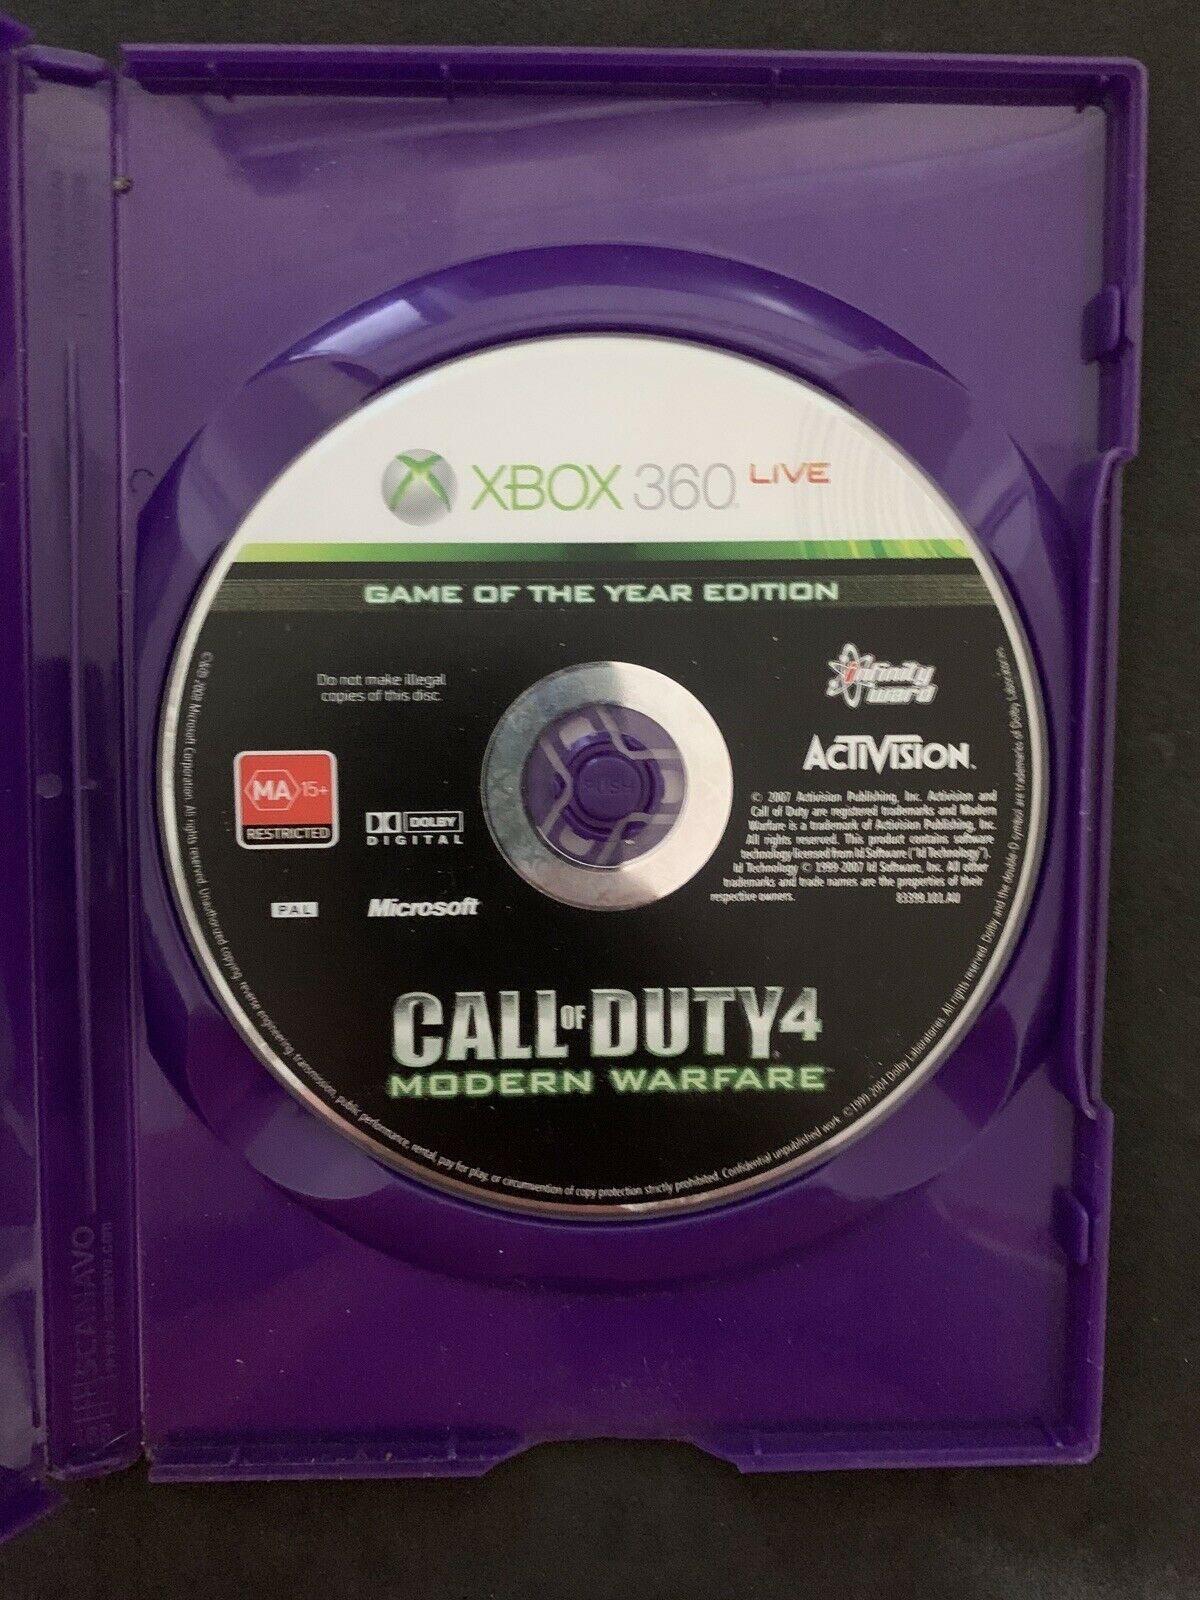 Call Of Duty 4 Modern Warfare GOTY Edition - Xbox 360